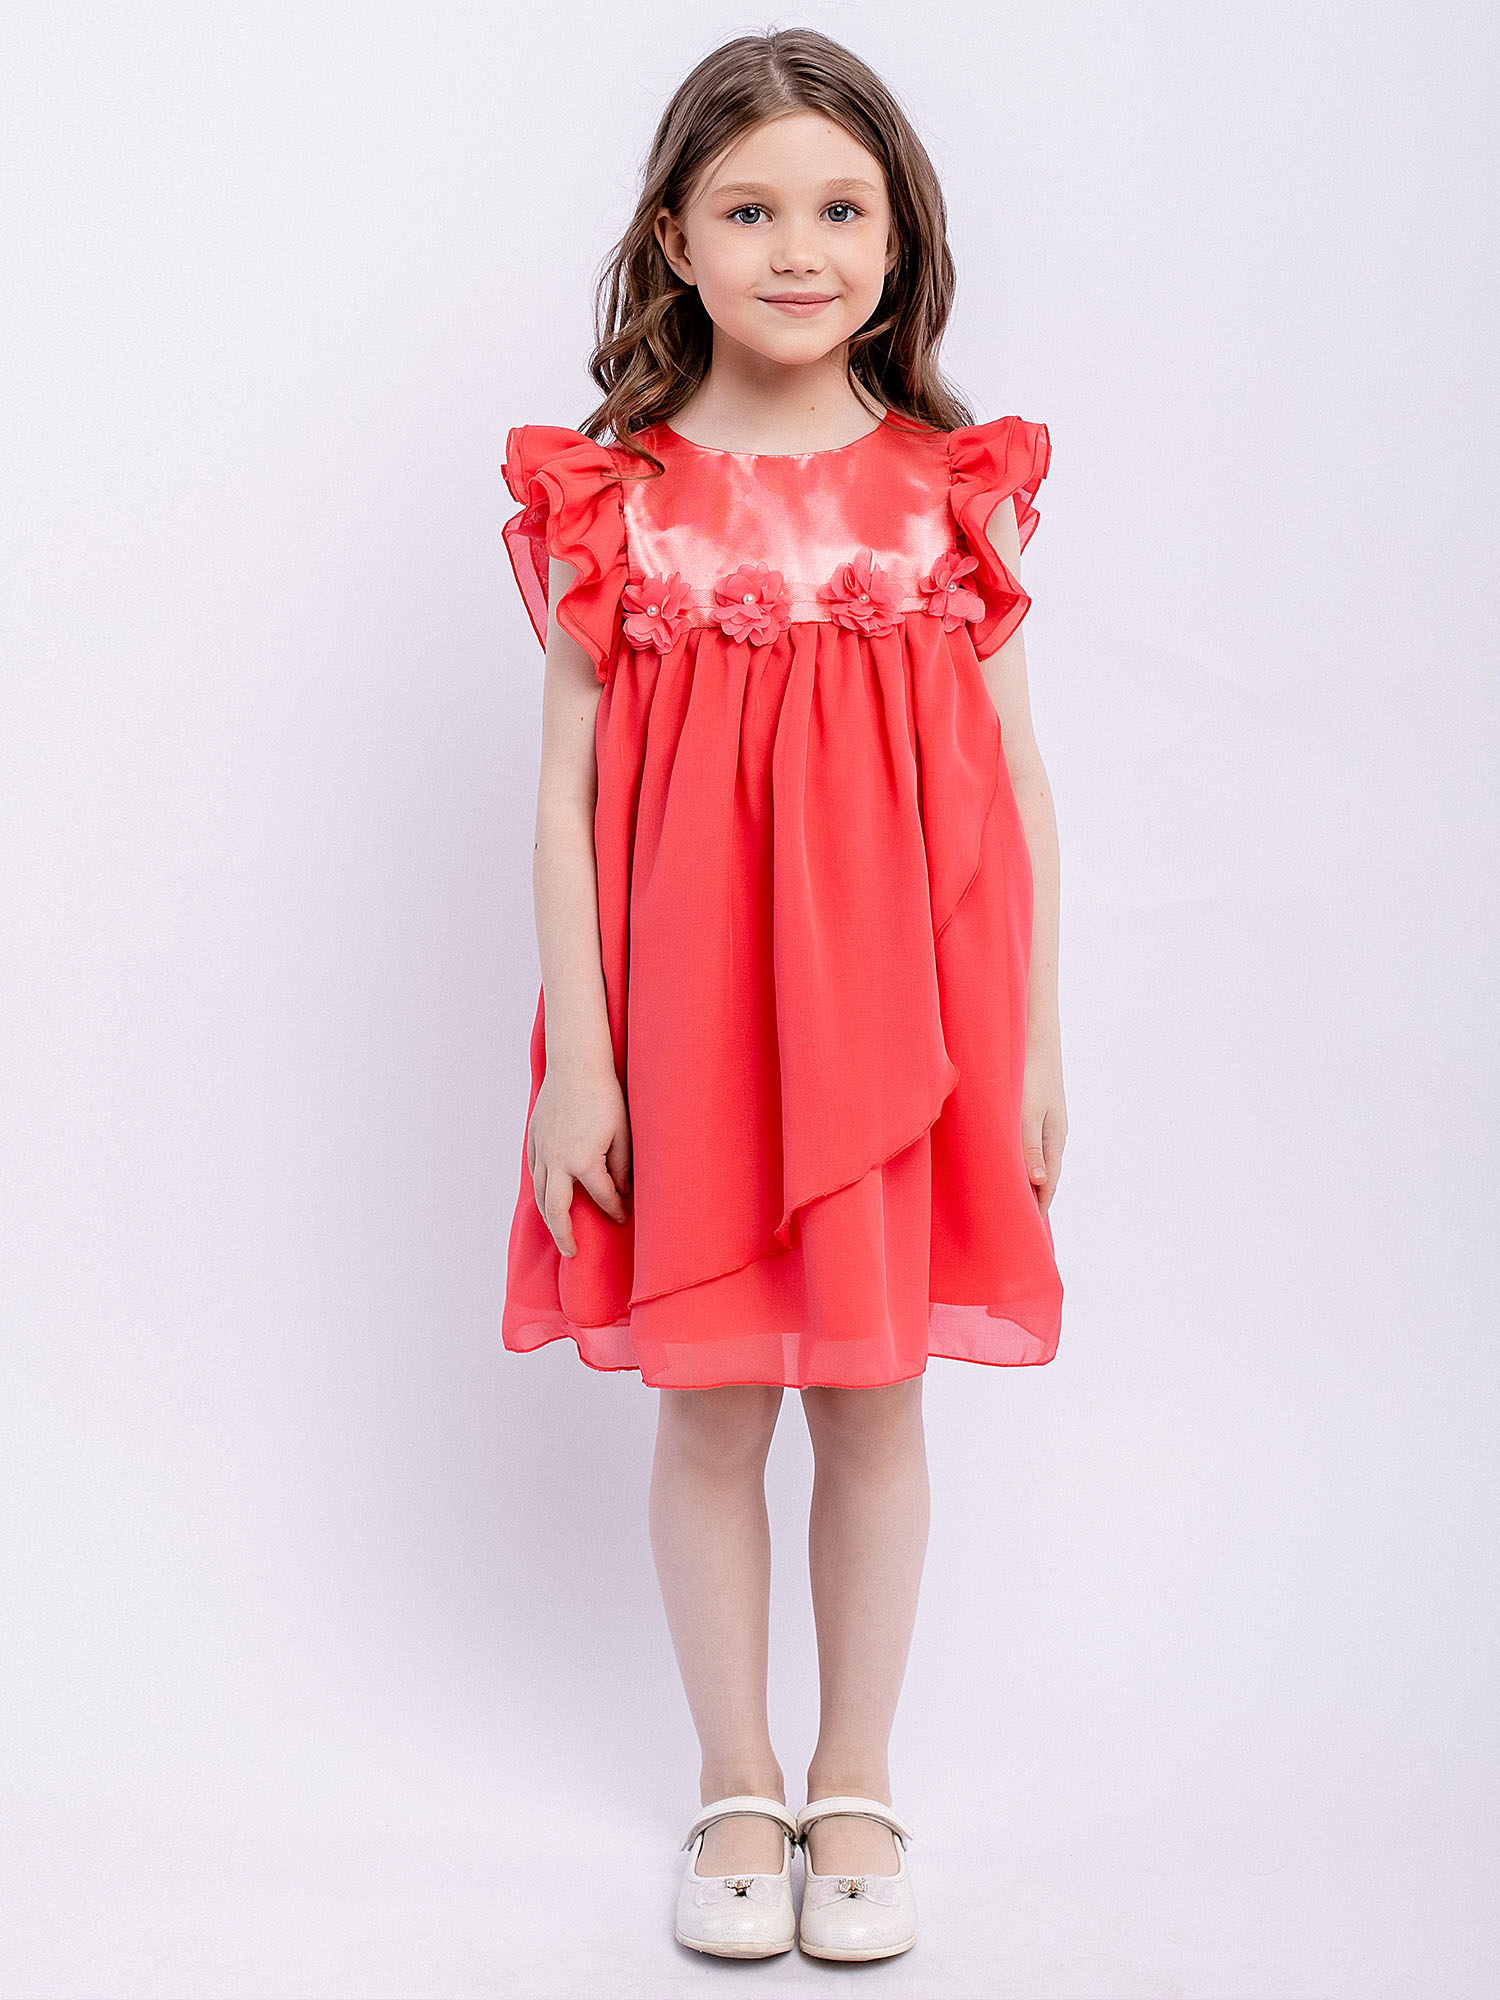 Платье детское Batik 010 п22-2, розовый фламинго, 110 комплект кофточка штанишки персик фламинго рост 62 см